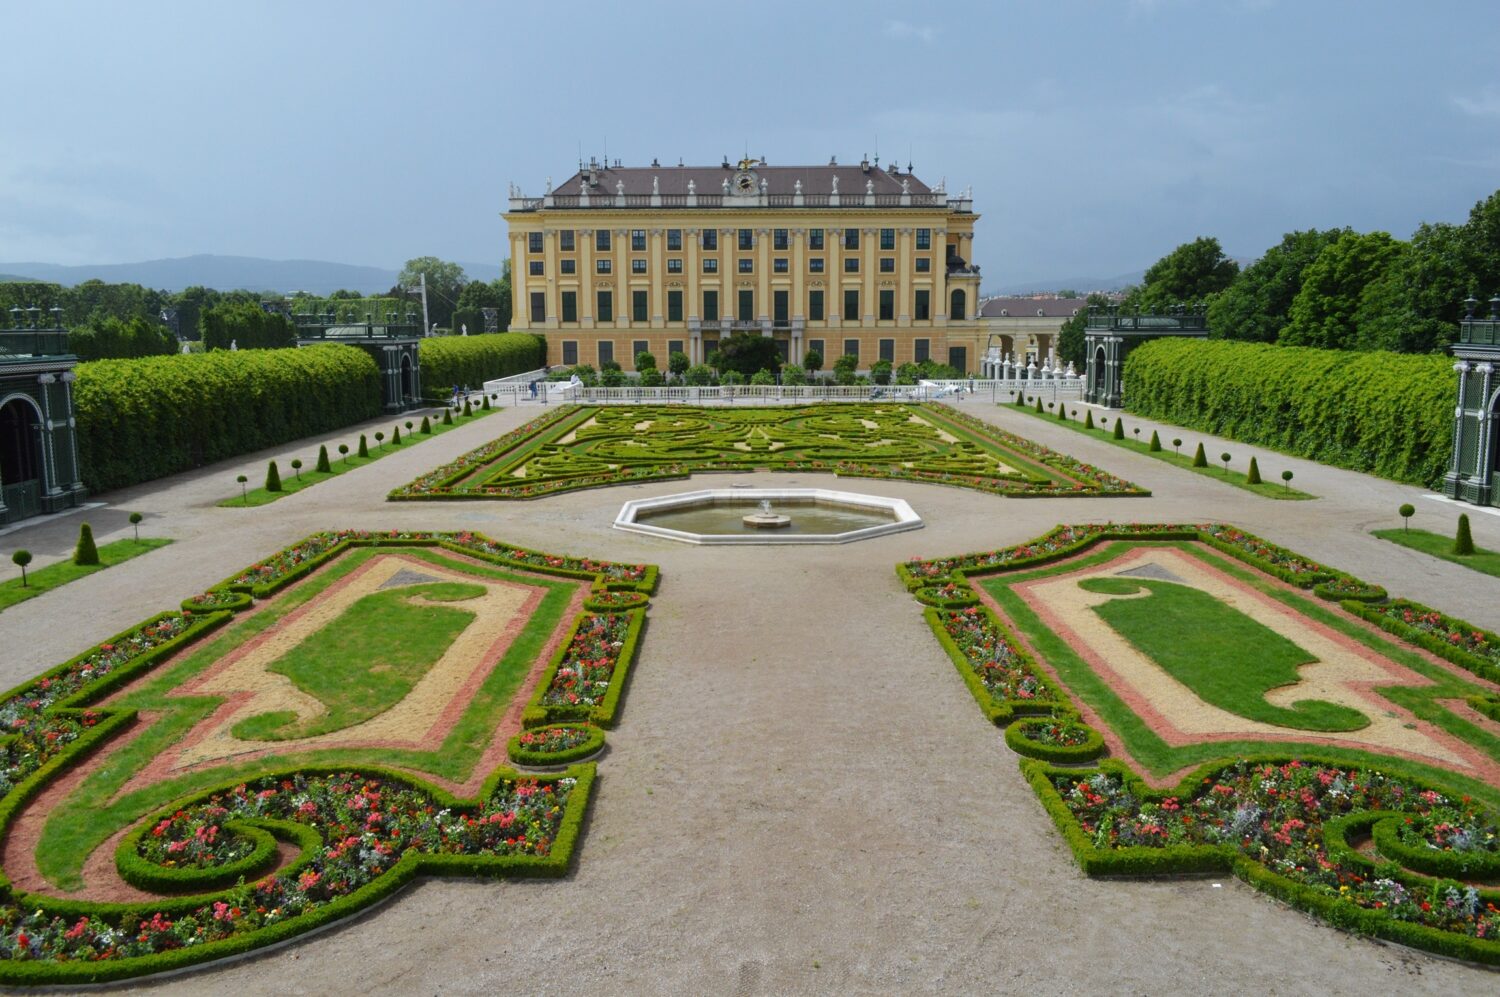 Palacio de Schonbrunn